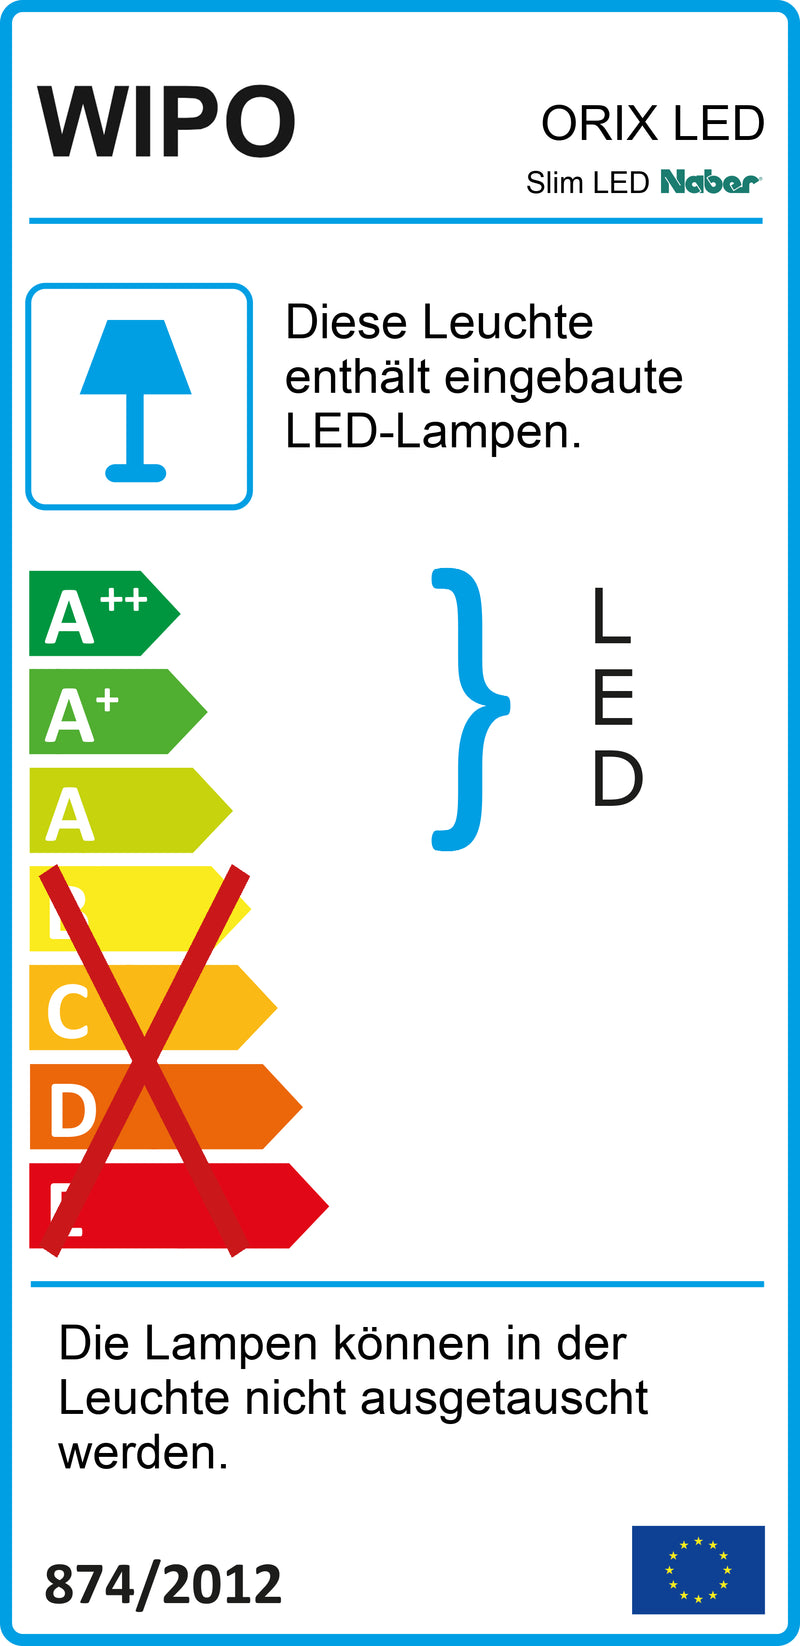 E-Label zu Zeichnung zu Slim LED als Variante weiß, L 1500 mm, 22 W von Naber GmbH in der Kategorie Lichttechnik in Österreich auf conceptshop.at